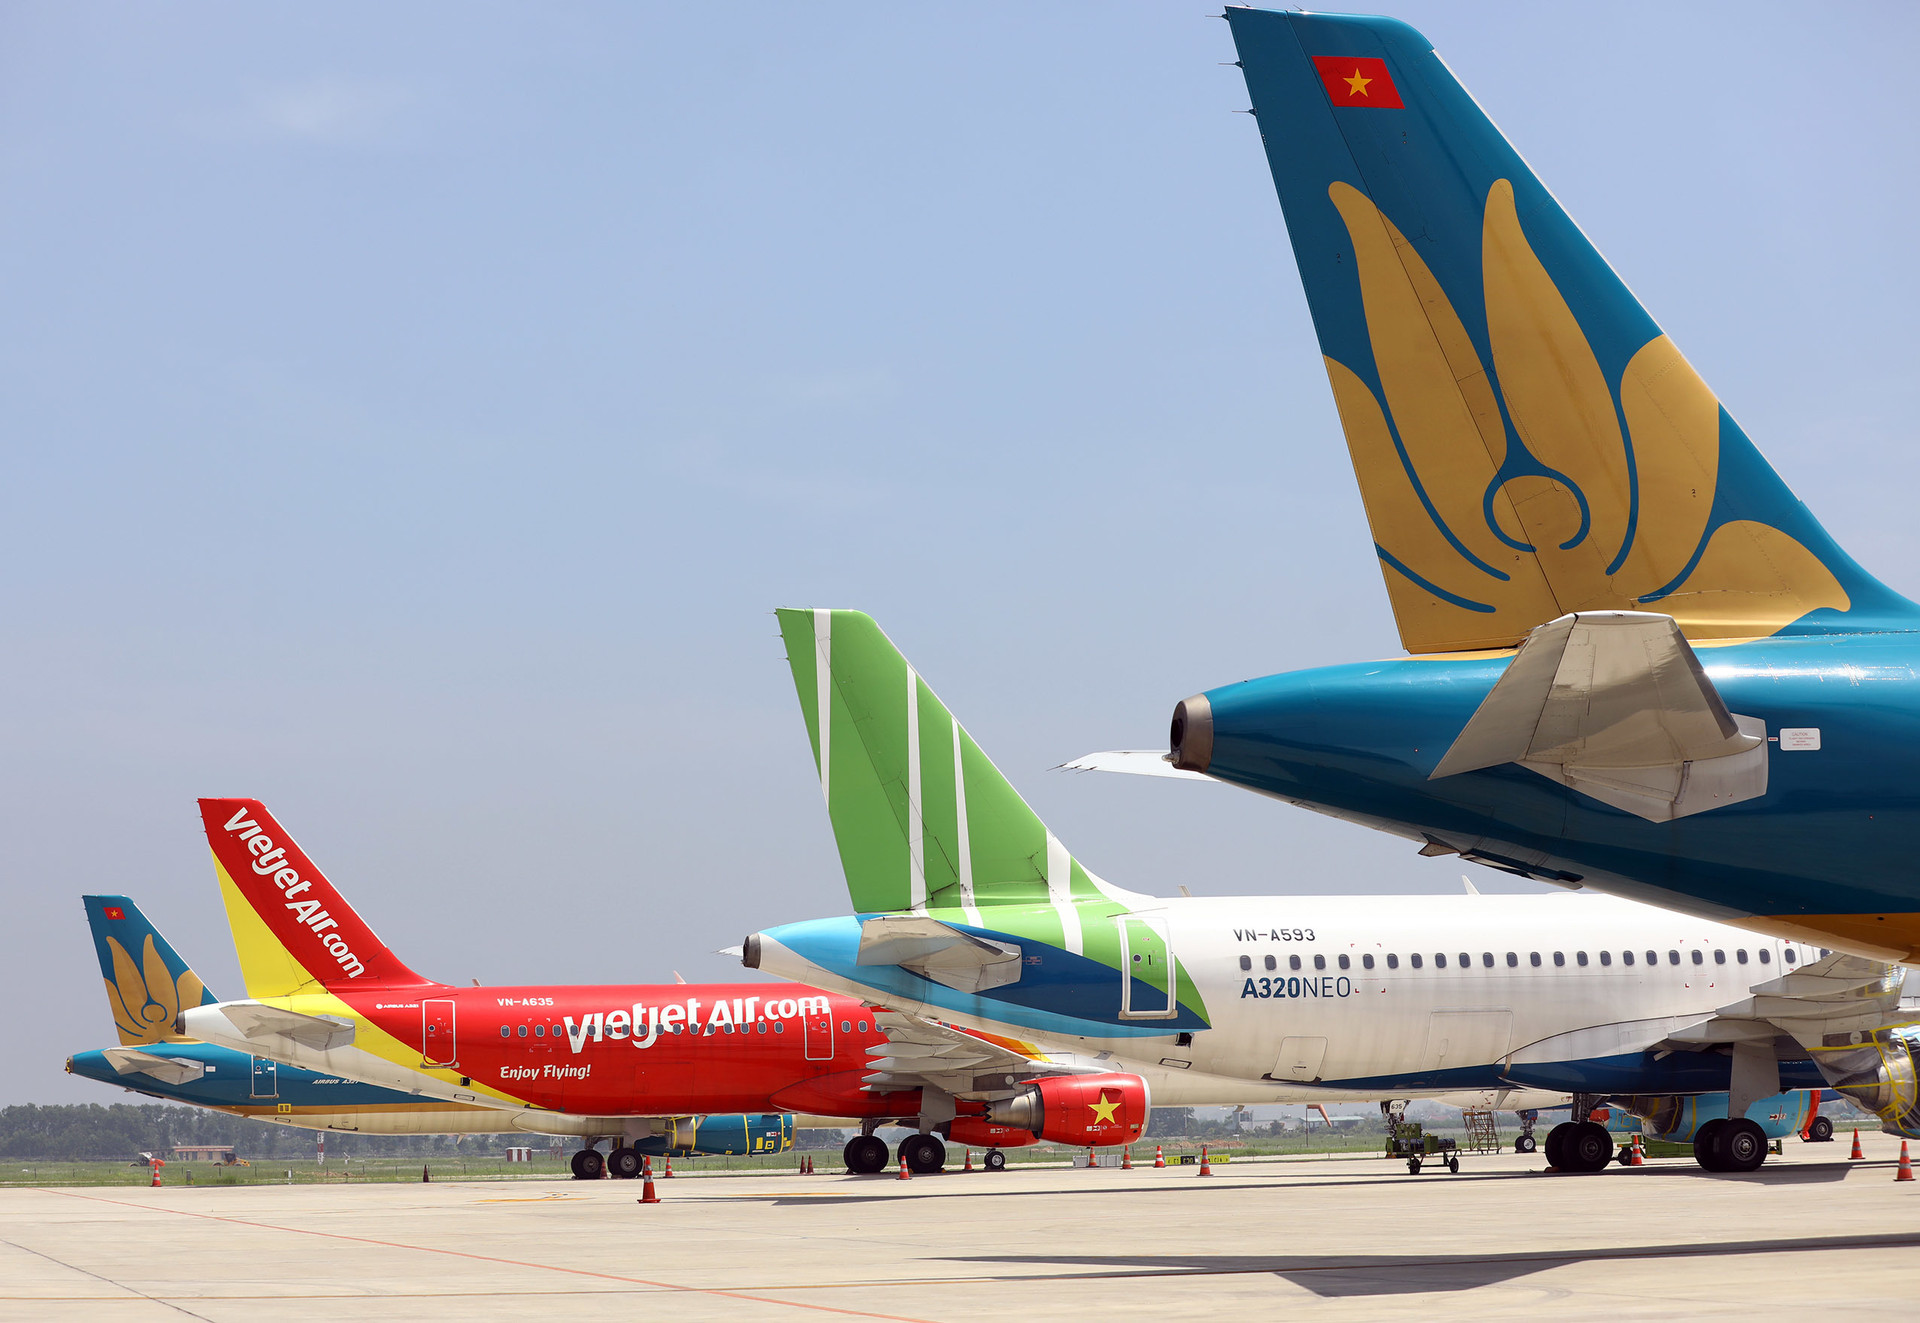 Máy bay nằm 'đắp chiếu', sân bay Nội Bài đóng cửa đường lăn làm sân đỗ